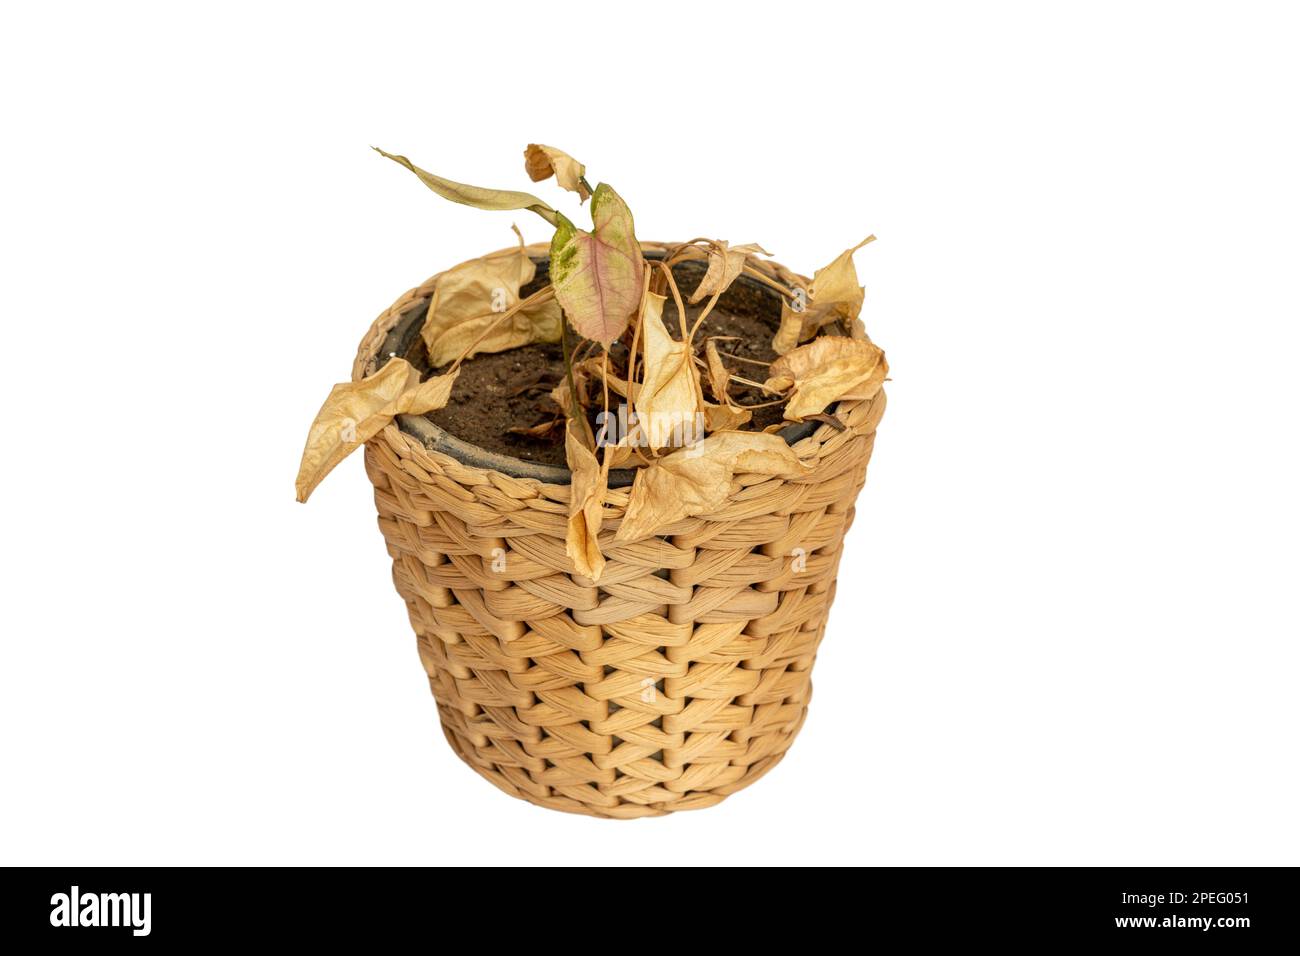 Pianta di Syngonium con foglie secche isolate su fondo bianco Foto Stock